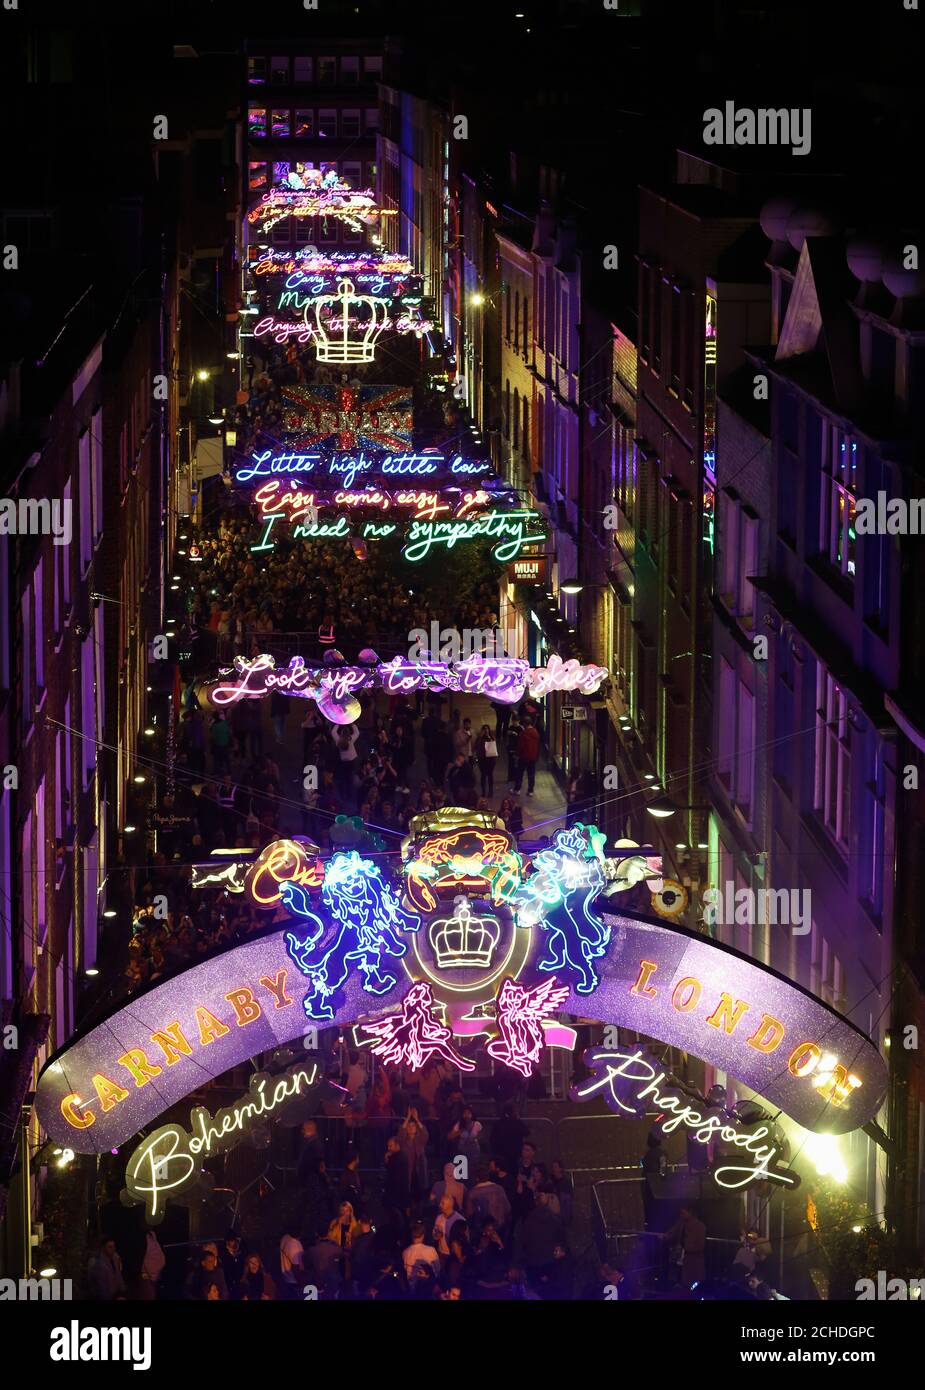 USO EDITORIALE SOLO UN'installazione leggera che celebra la canzone regina Bohemian Rhapsody è lanciato a Carnaby Street a Londra. Le luci con i testi di Freddie Mercury illumineranno la strada fino a gennaio, in occasione del prossimo film Bohemian Rhapsody. Foto Stock